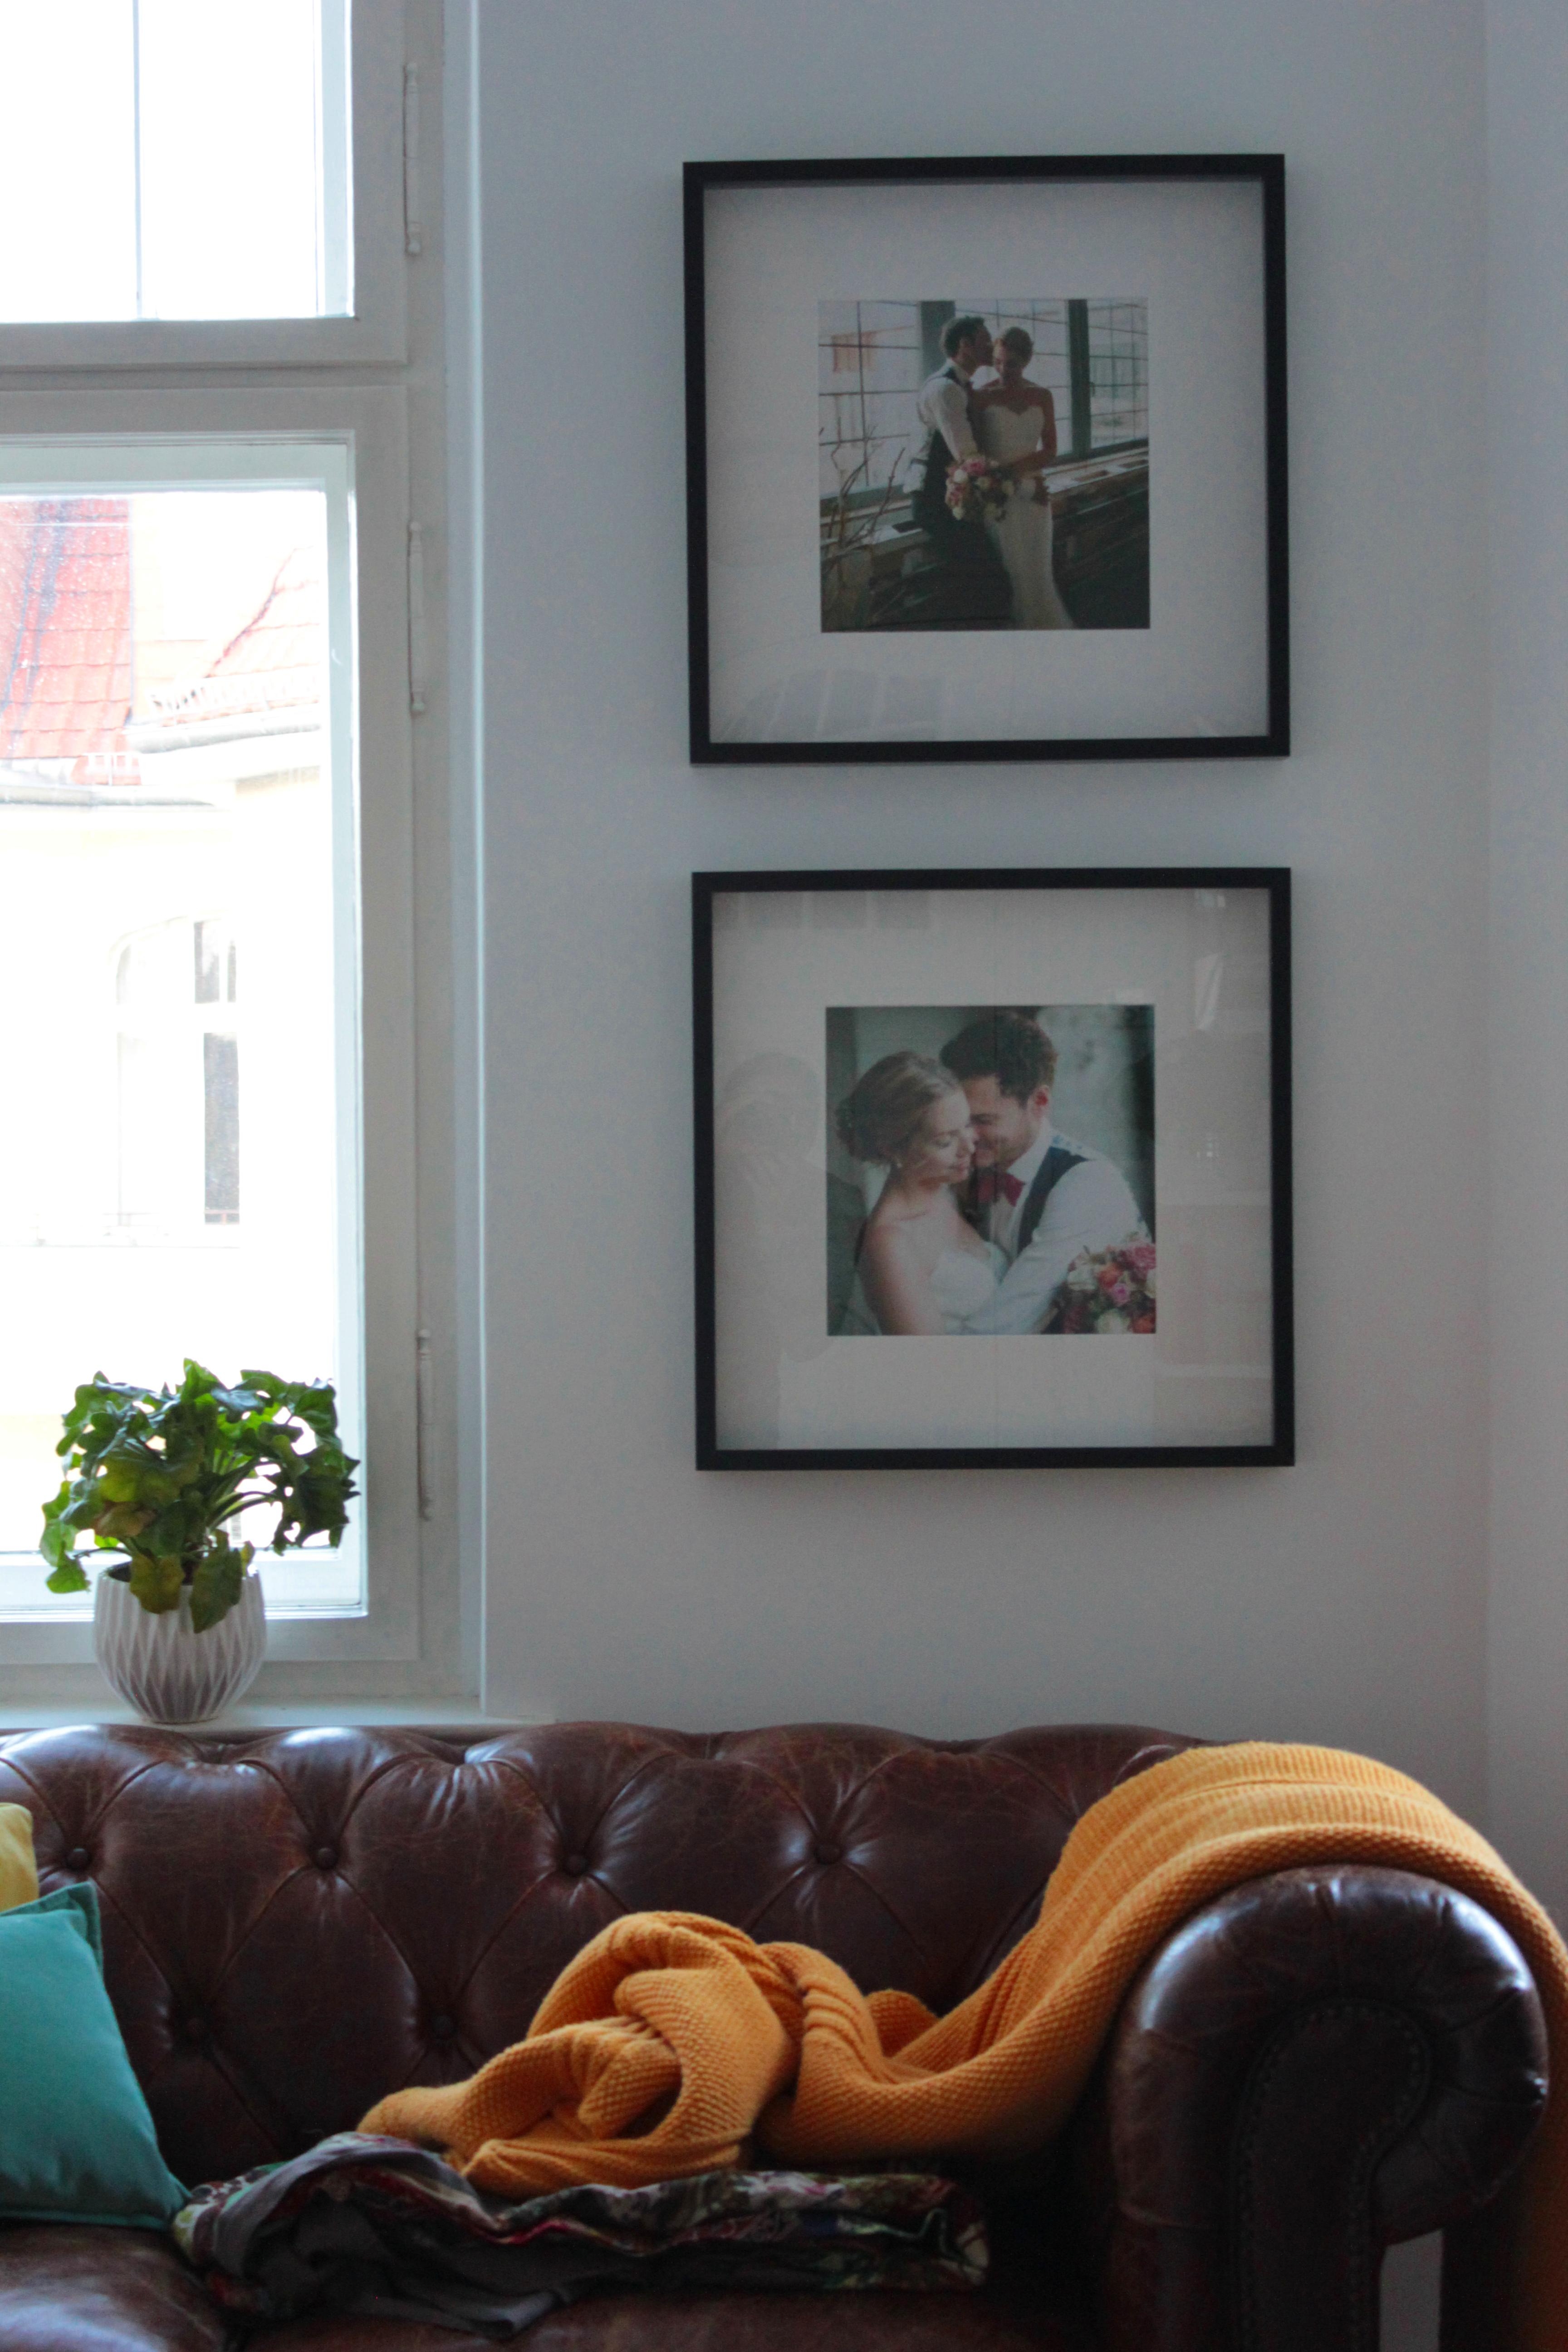 Wer hat noch über 3 Jahre gebraucht, um seine Hochzeitsbilder aufzuhängen? Egal, das Ergebnis zählt :P #Wohnzimmer #Bild